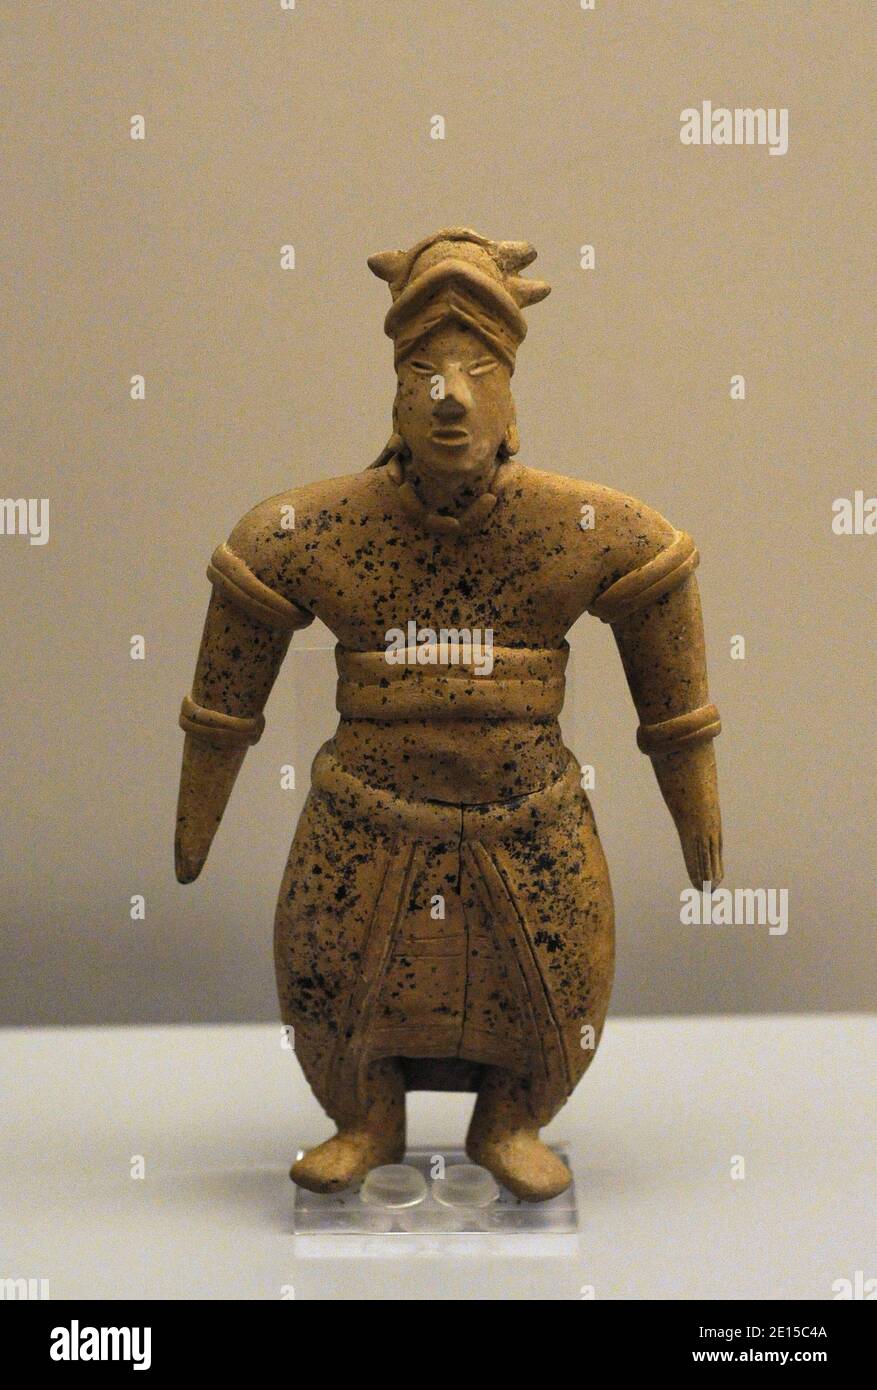 Figura maschile di alto rango che indossa abiti e ornamenti costosi. Ceramica. Stile Colima (100-400 d.C.). Messico occidentale. Mesoamerica. Museo delle Americhe. Madrid, Spagna. Foto Stock